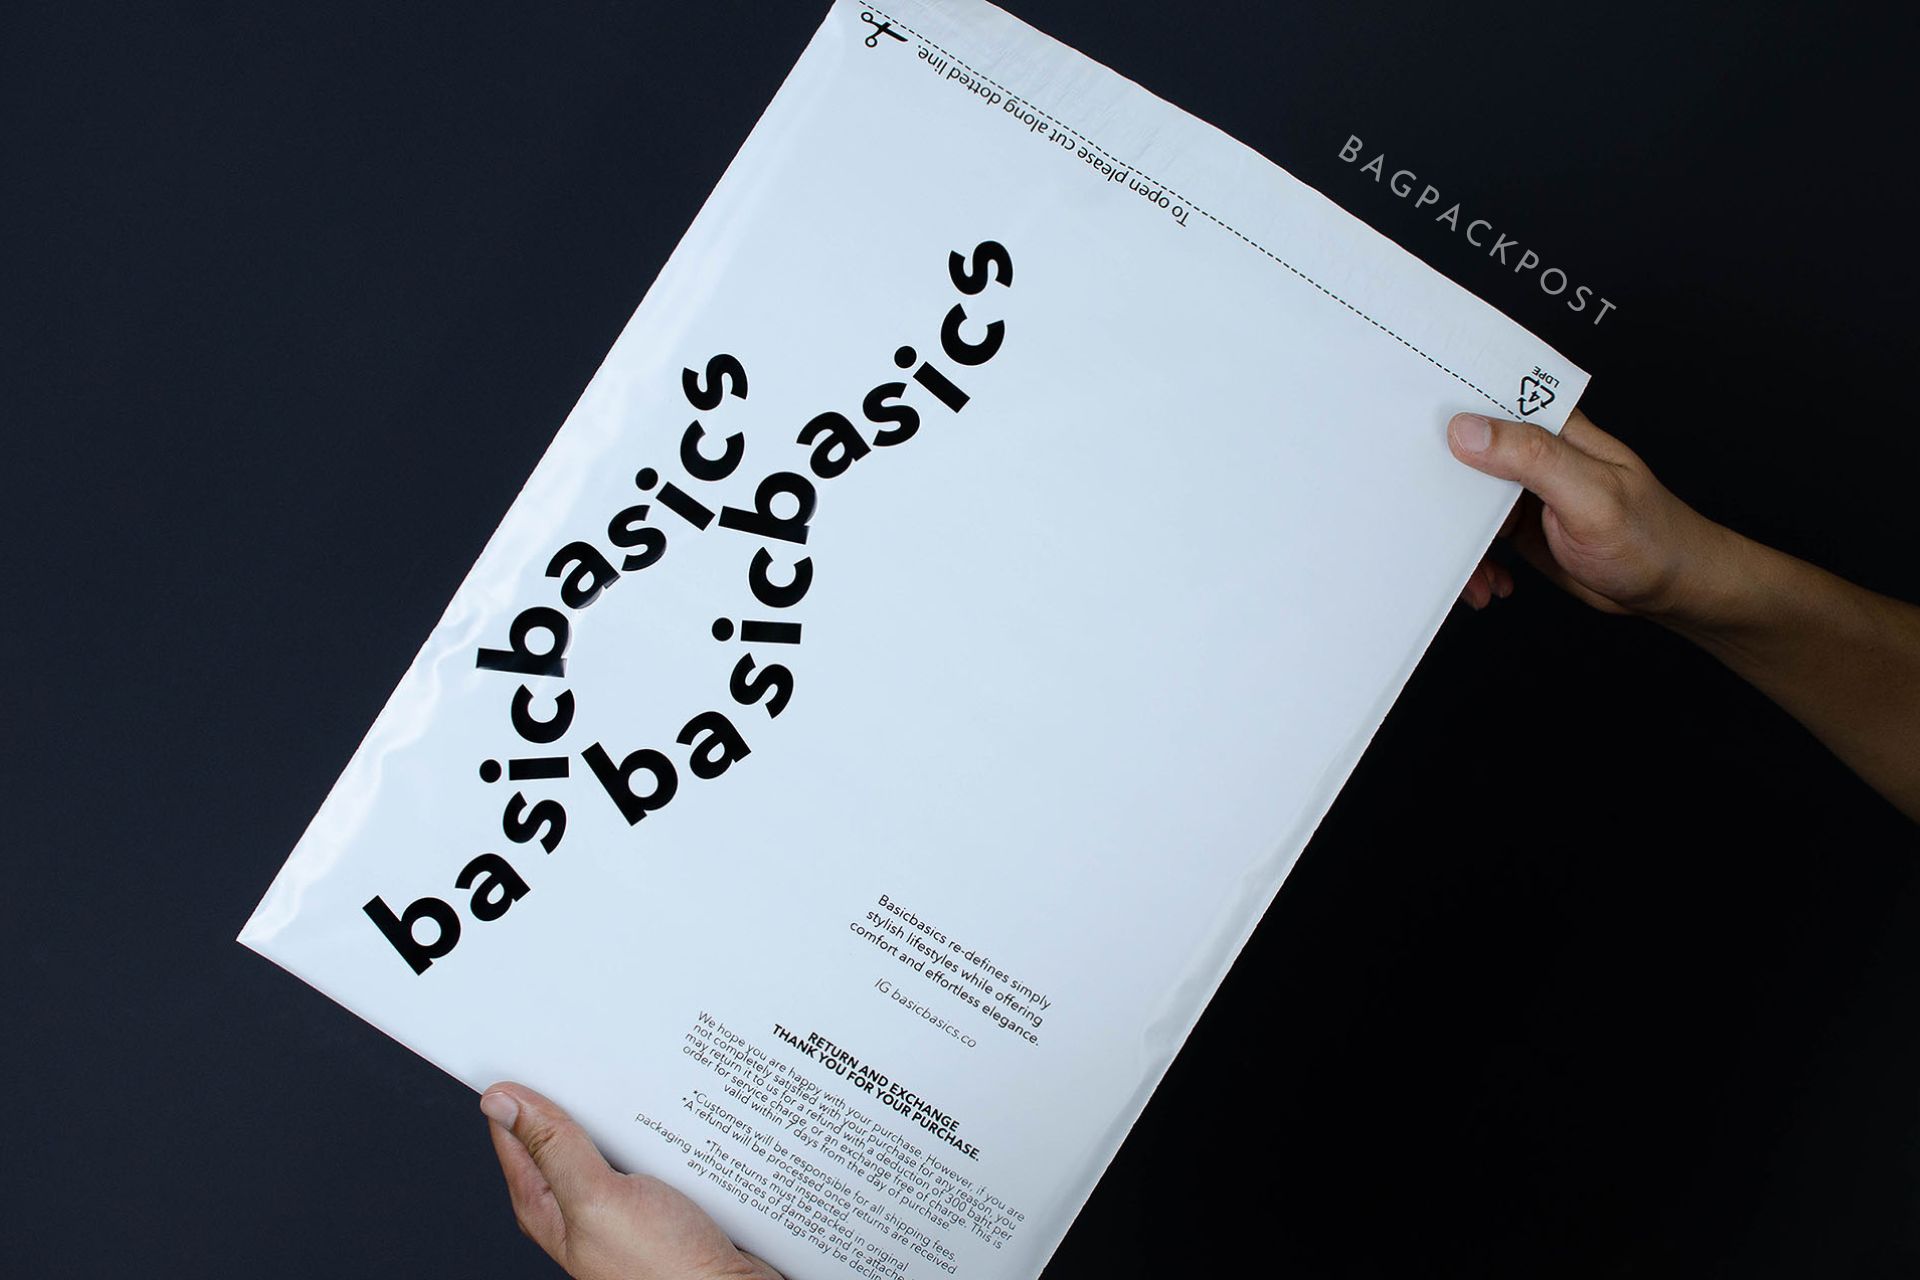 ผลิตถุงไปรษณีย์ ซองไปรษณีย์พิมพ์ลาย basicbasics ซองไปรษณีย์สีขาว ถุงไปรษณีย์พิมพ์ลาย 2 BagPackPost